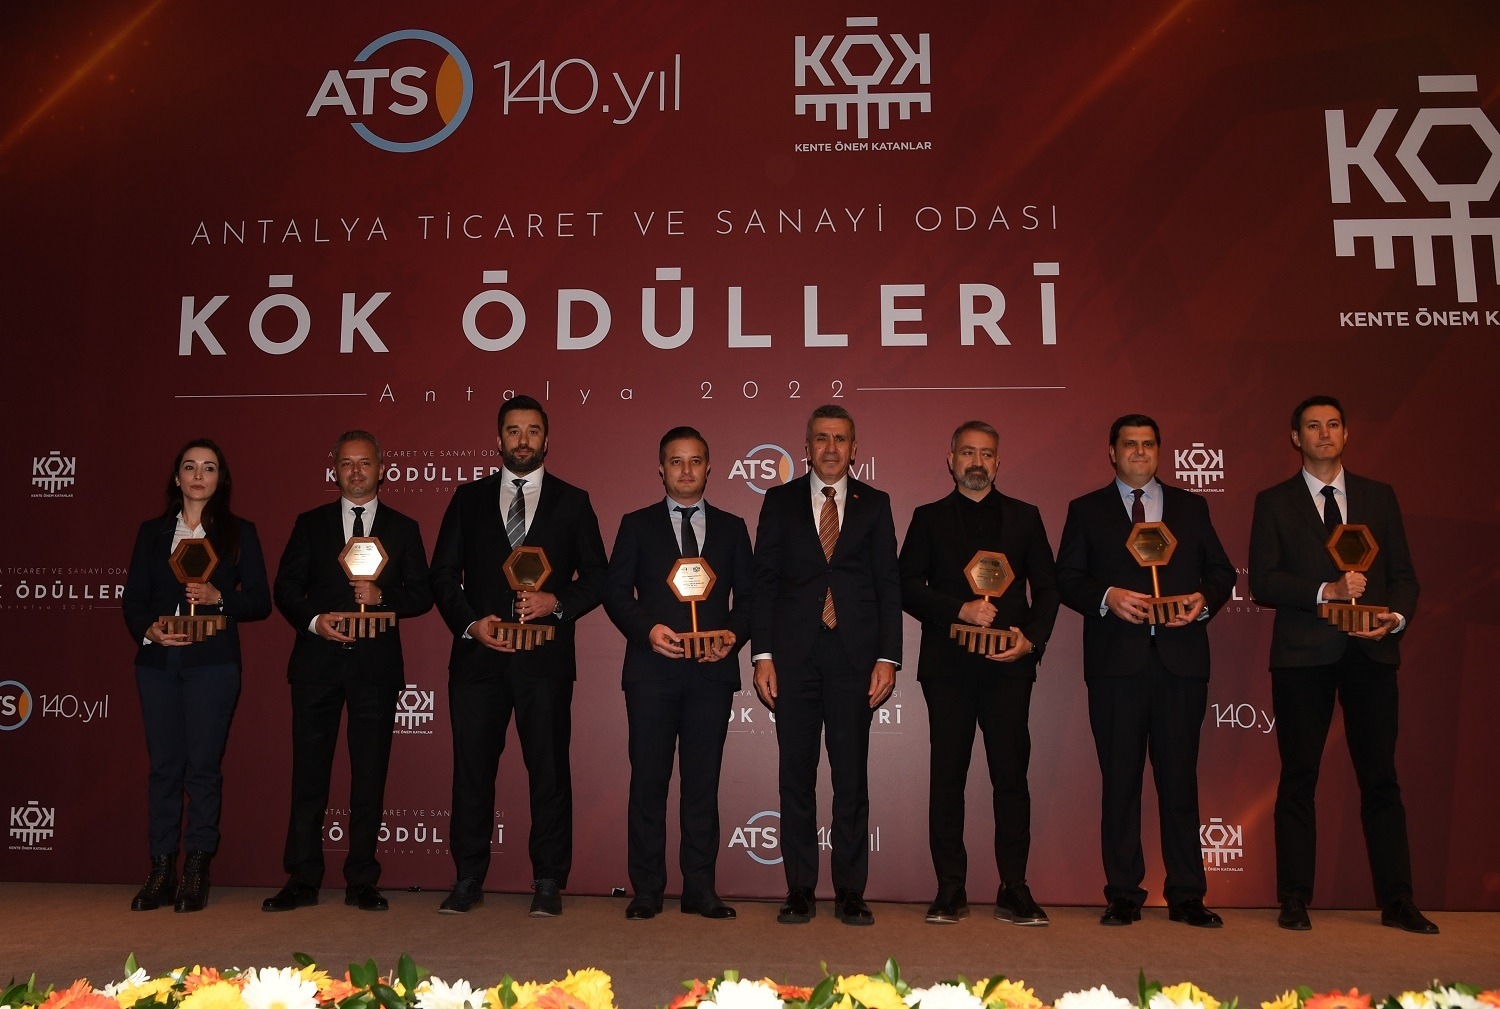 Antalya Ticaret ve Sanayi Odası’ndan CW Enerji’ye Bir Ödül Daha